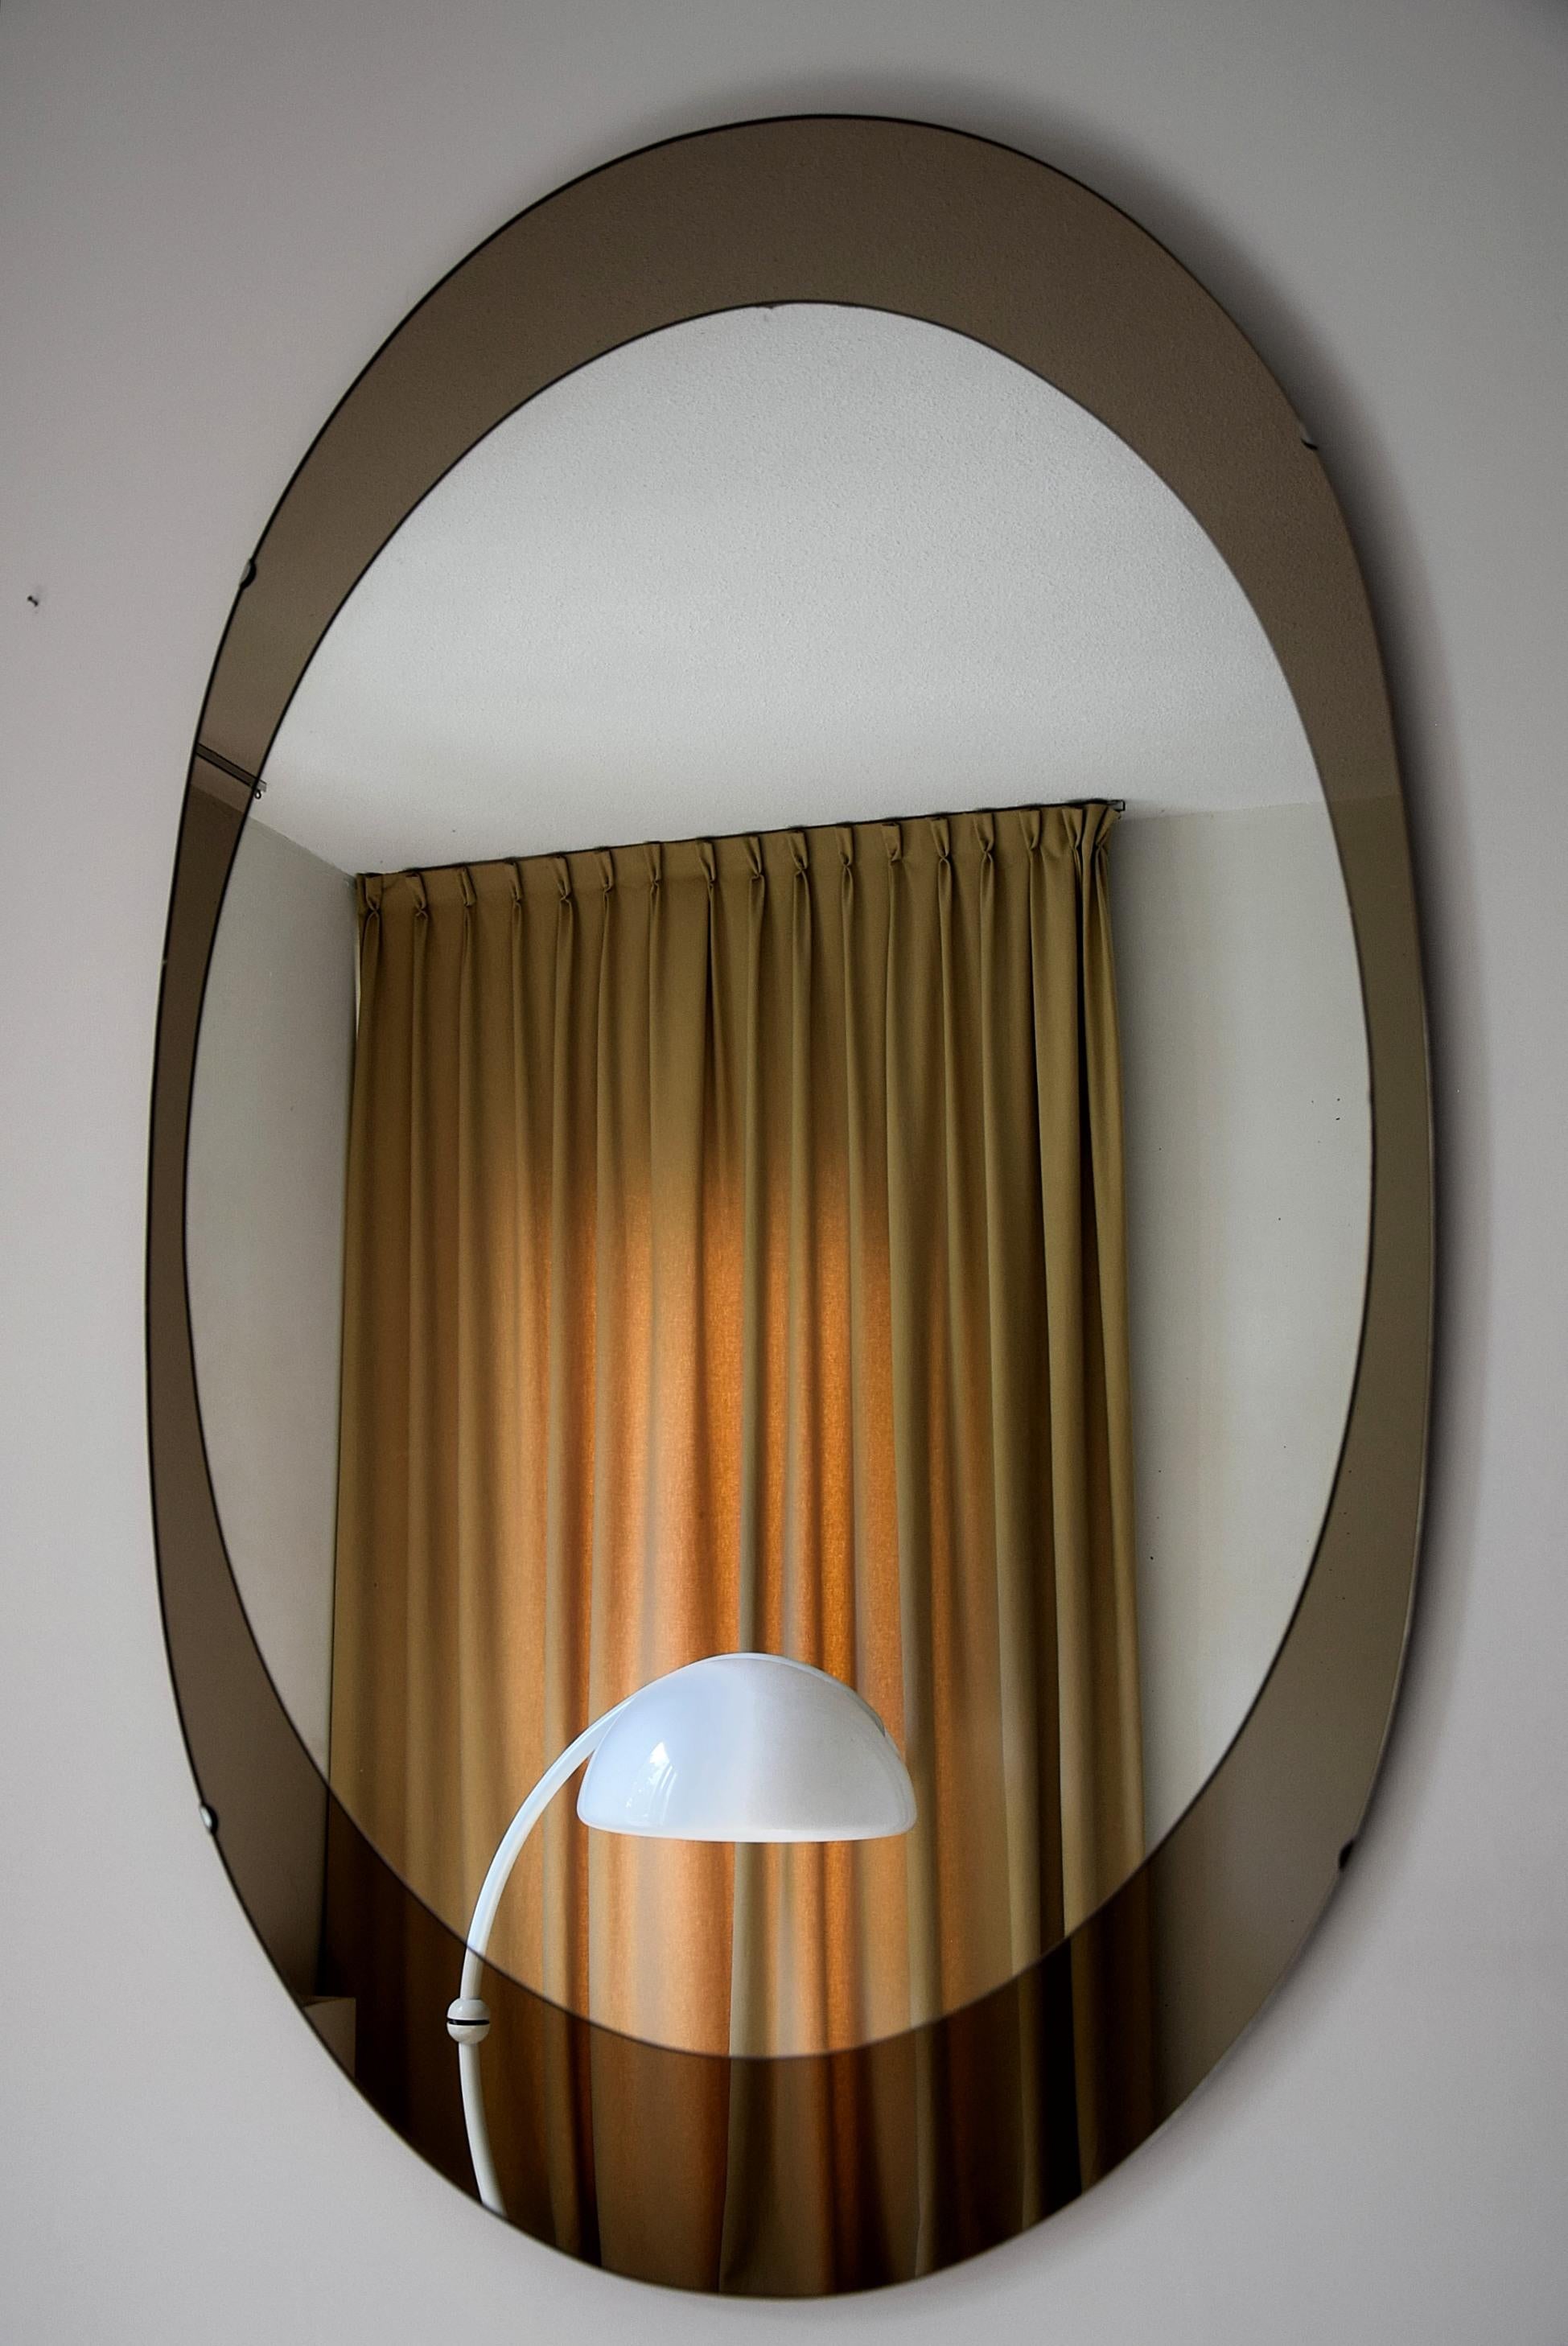 Impressionnant et élégant miroir ovale avec un cadre en bronze élégant produit par Cristal Arte, Italie, dans les années 1960.
Cette beauté mesure 132 cm ou 4,4 pieds x 80 cm ou 2,8 pieds. Il peut être accroché à la verticale ou à l'horizontale